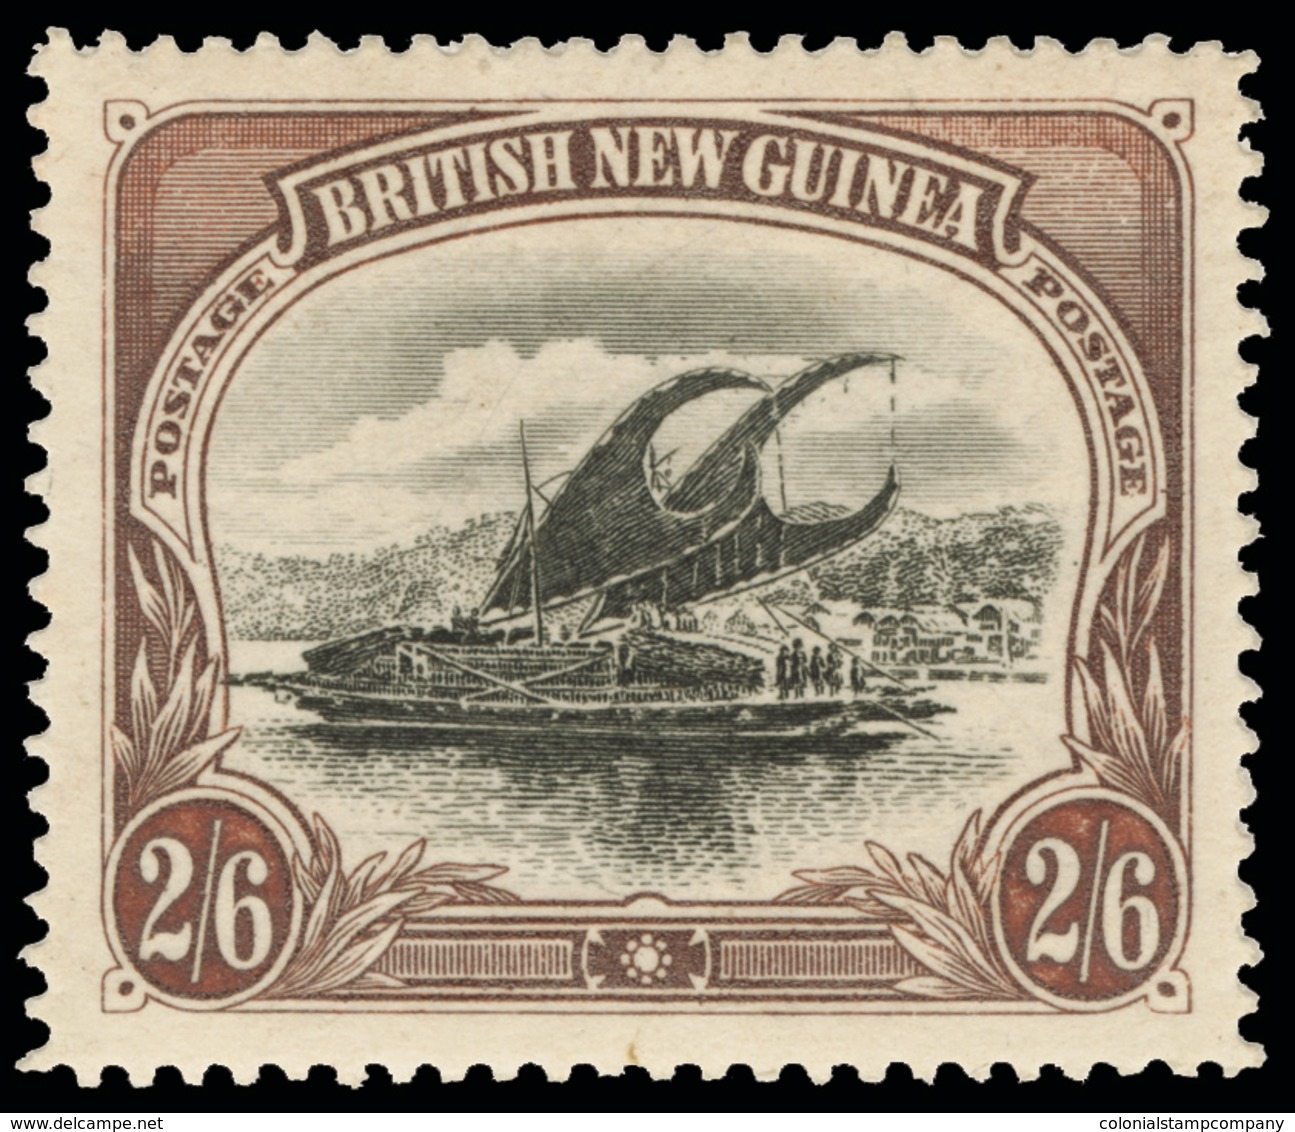 * Papua New Guinea - Lot No.868 - Papua-Neuguinea